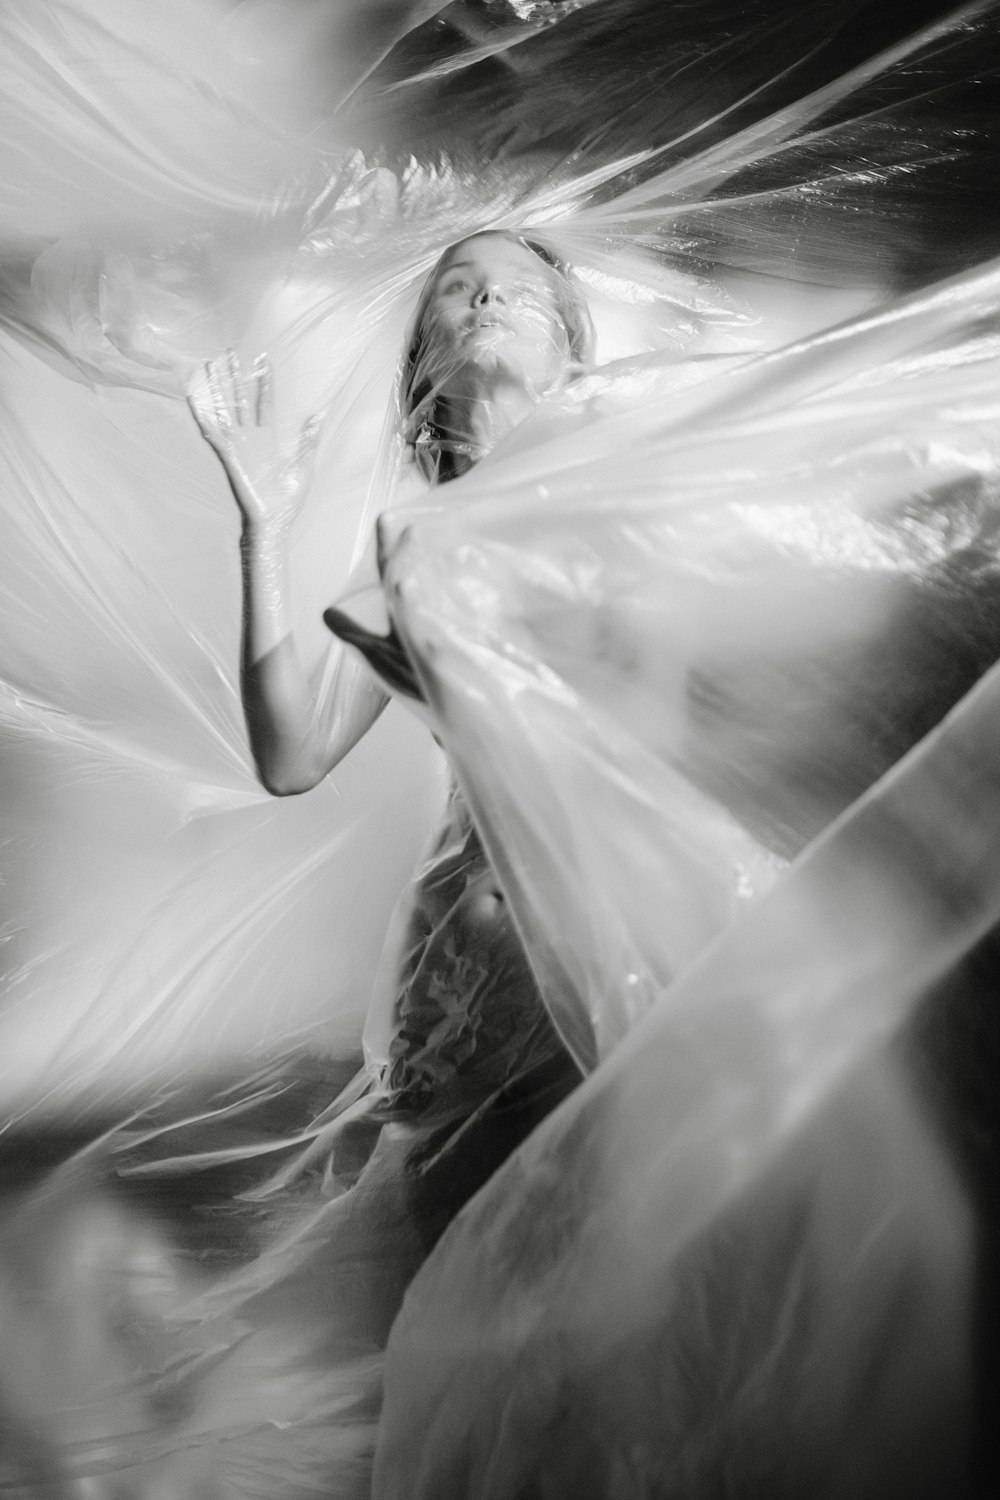 Fotografía en escala de grises de una mujer cubierta de plástico